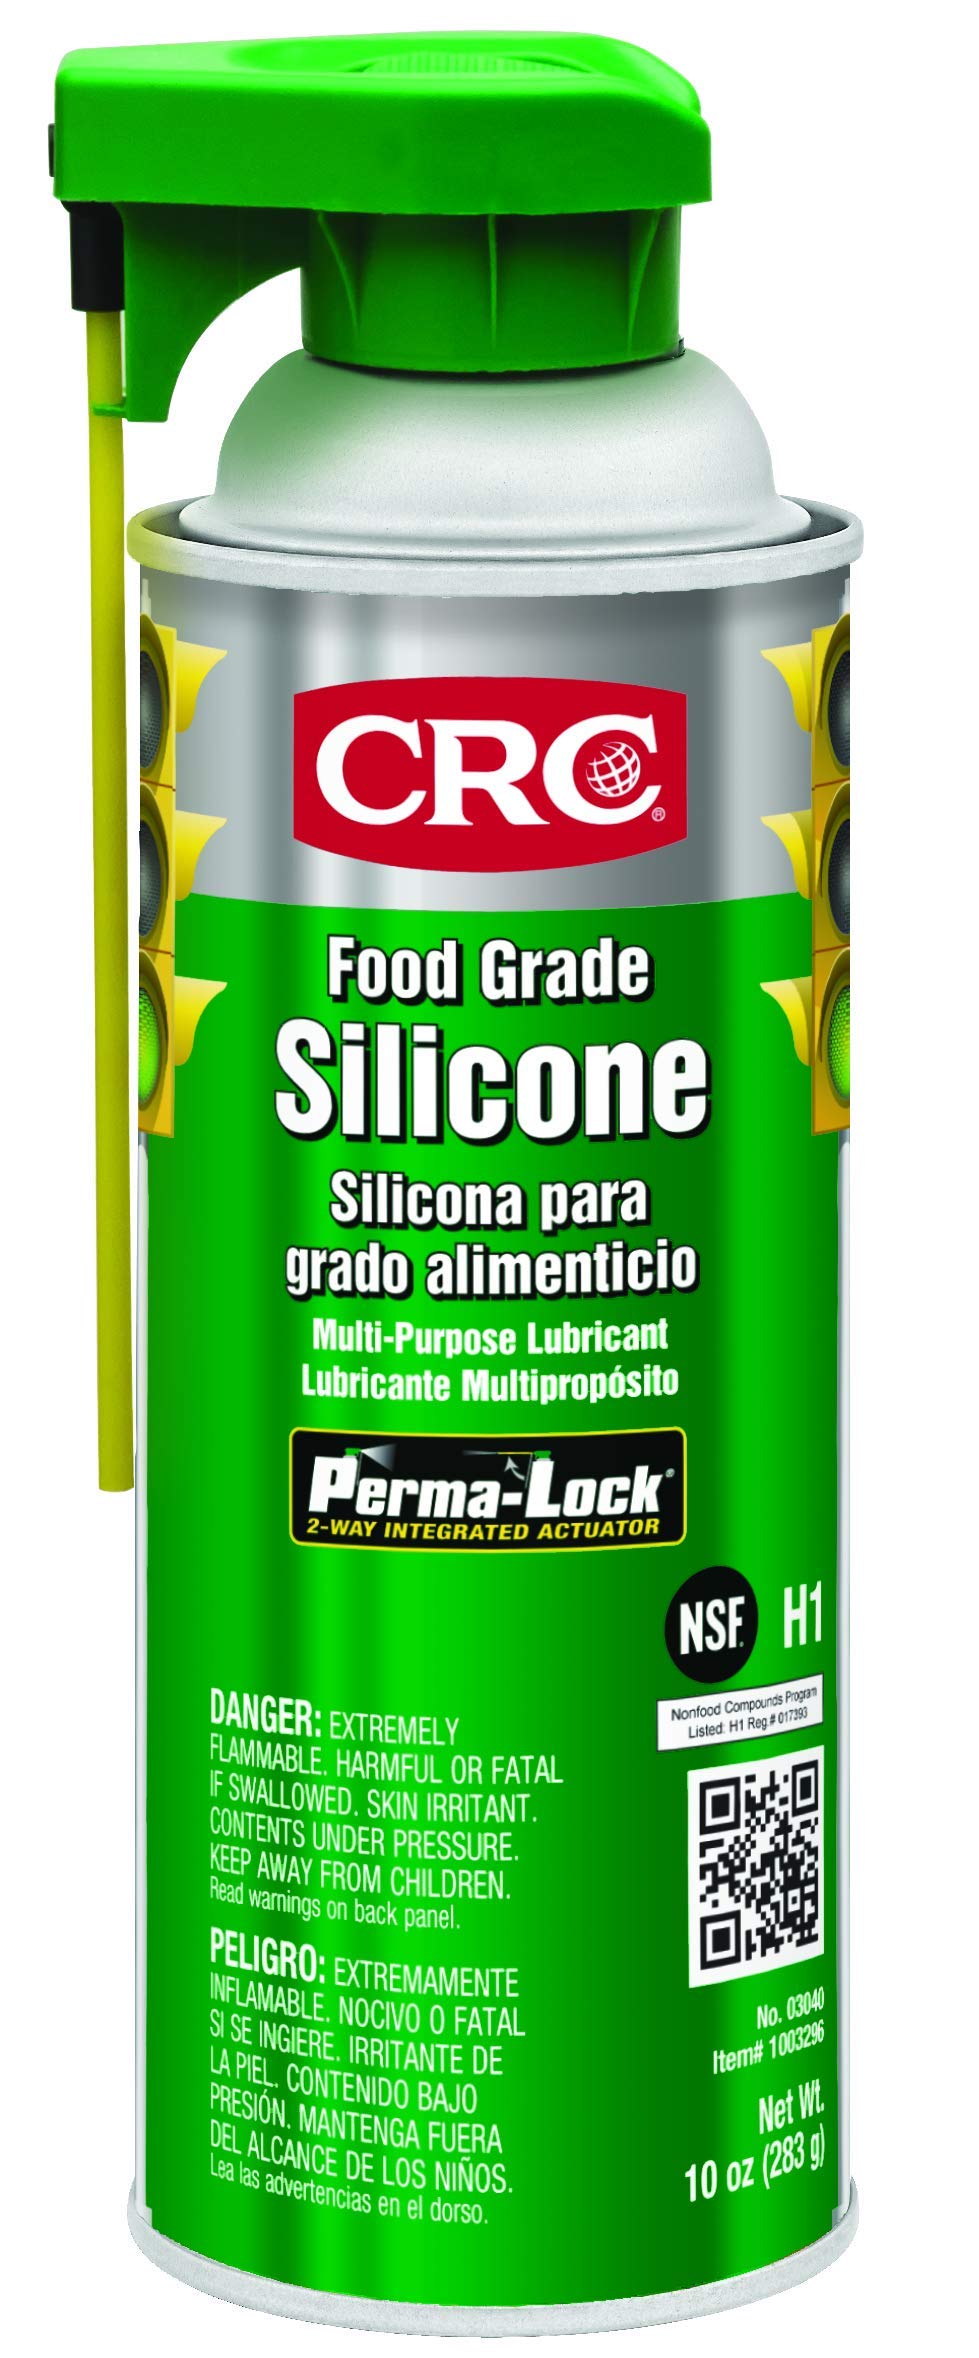 CRC Food Grade Silicone, 10 Wt Oz, Multi-Purpose Silico...